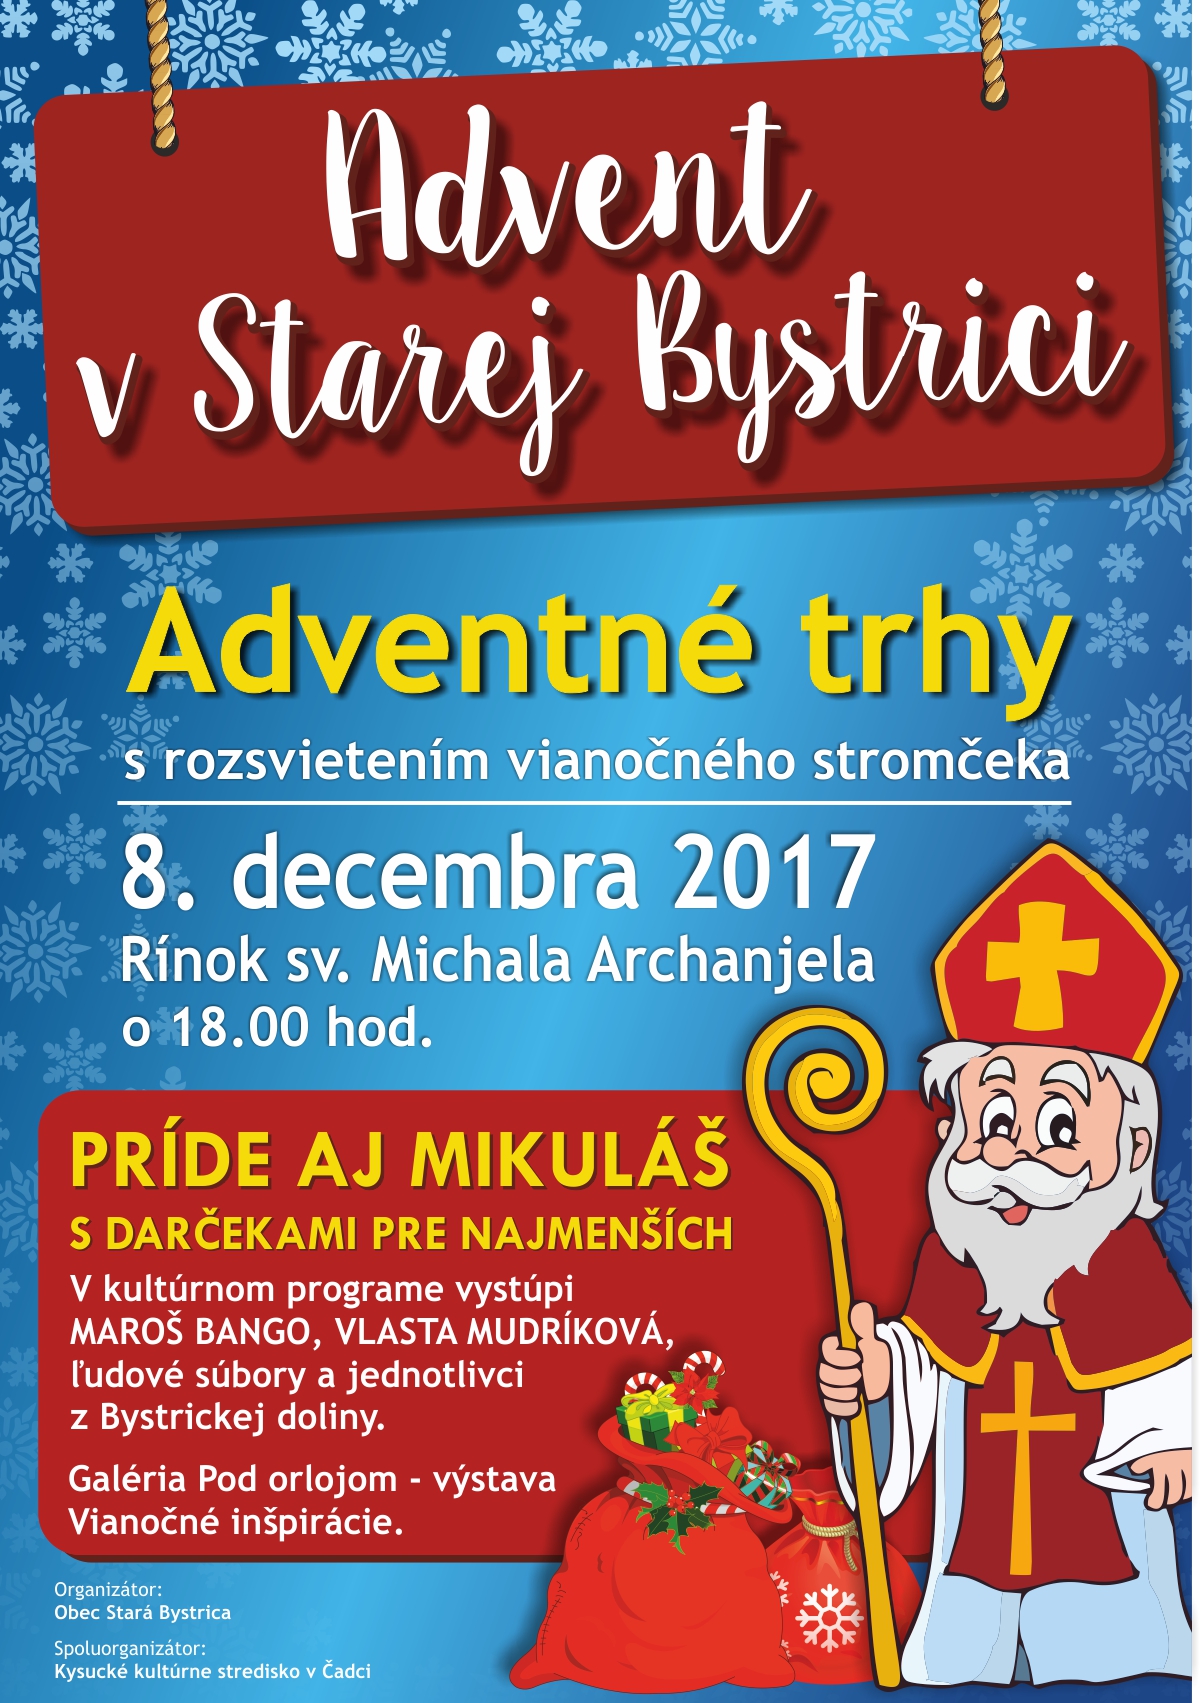 Adventn trhy 2017 Star Bystrica